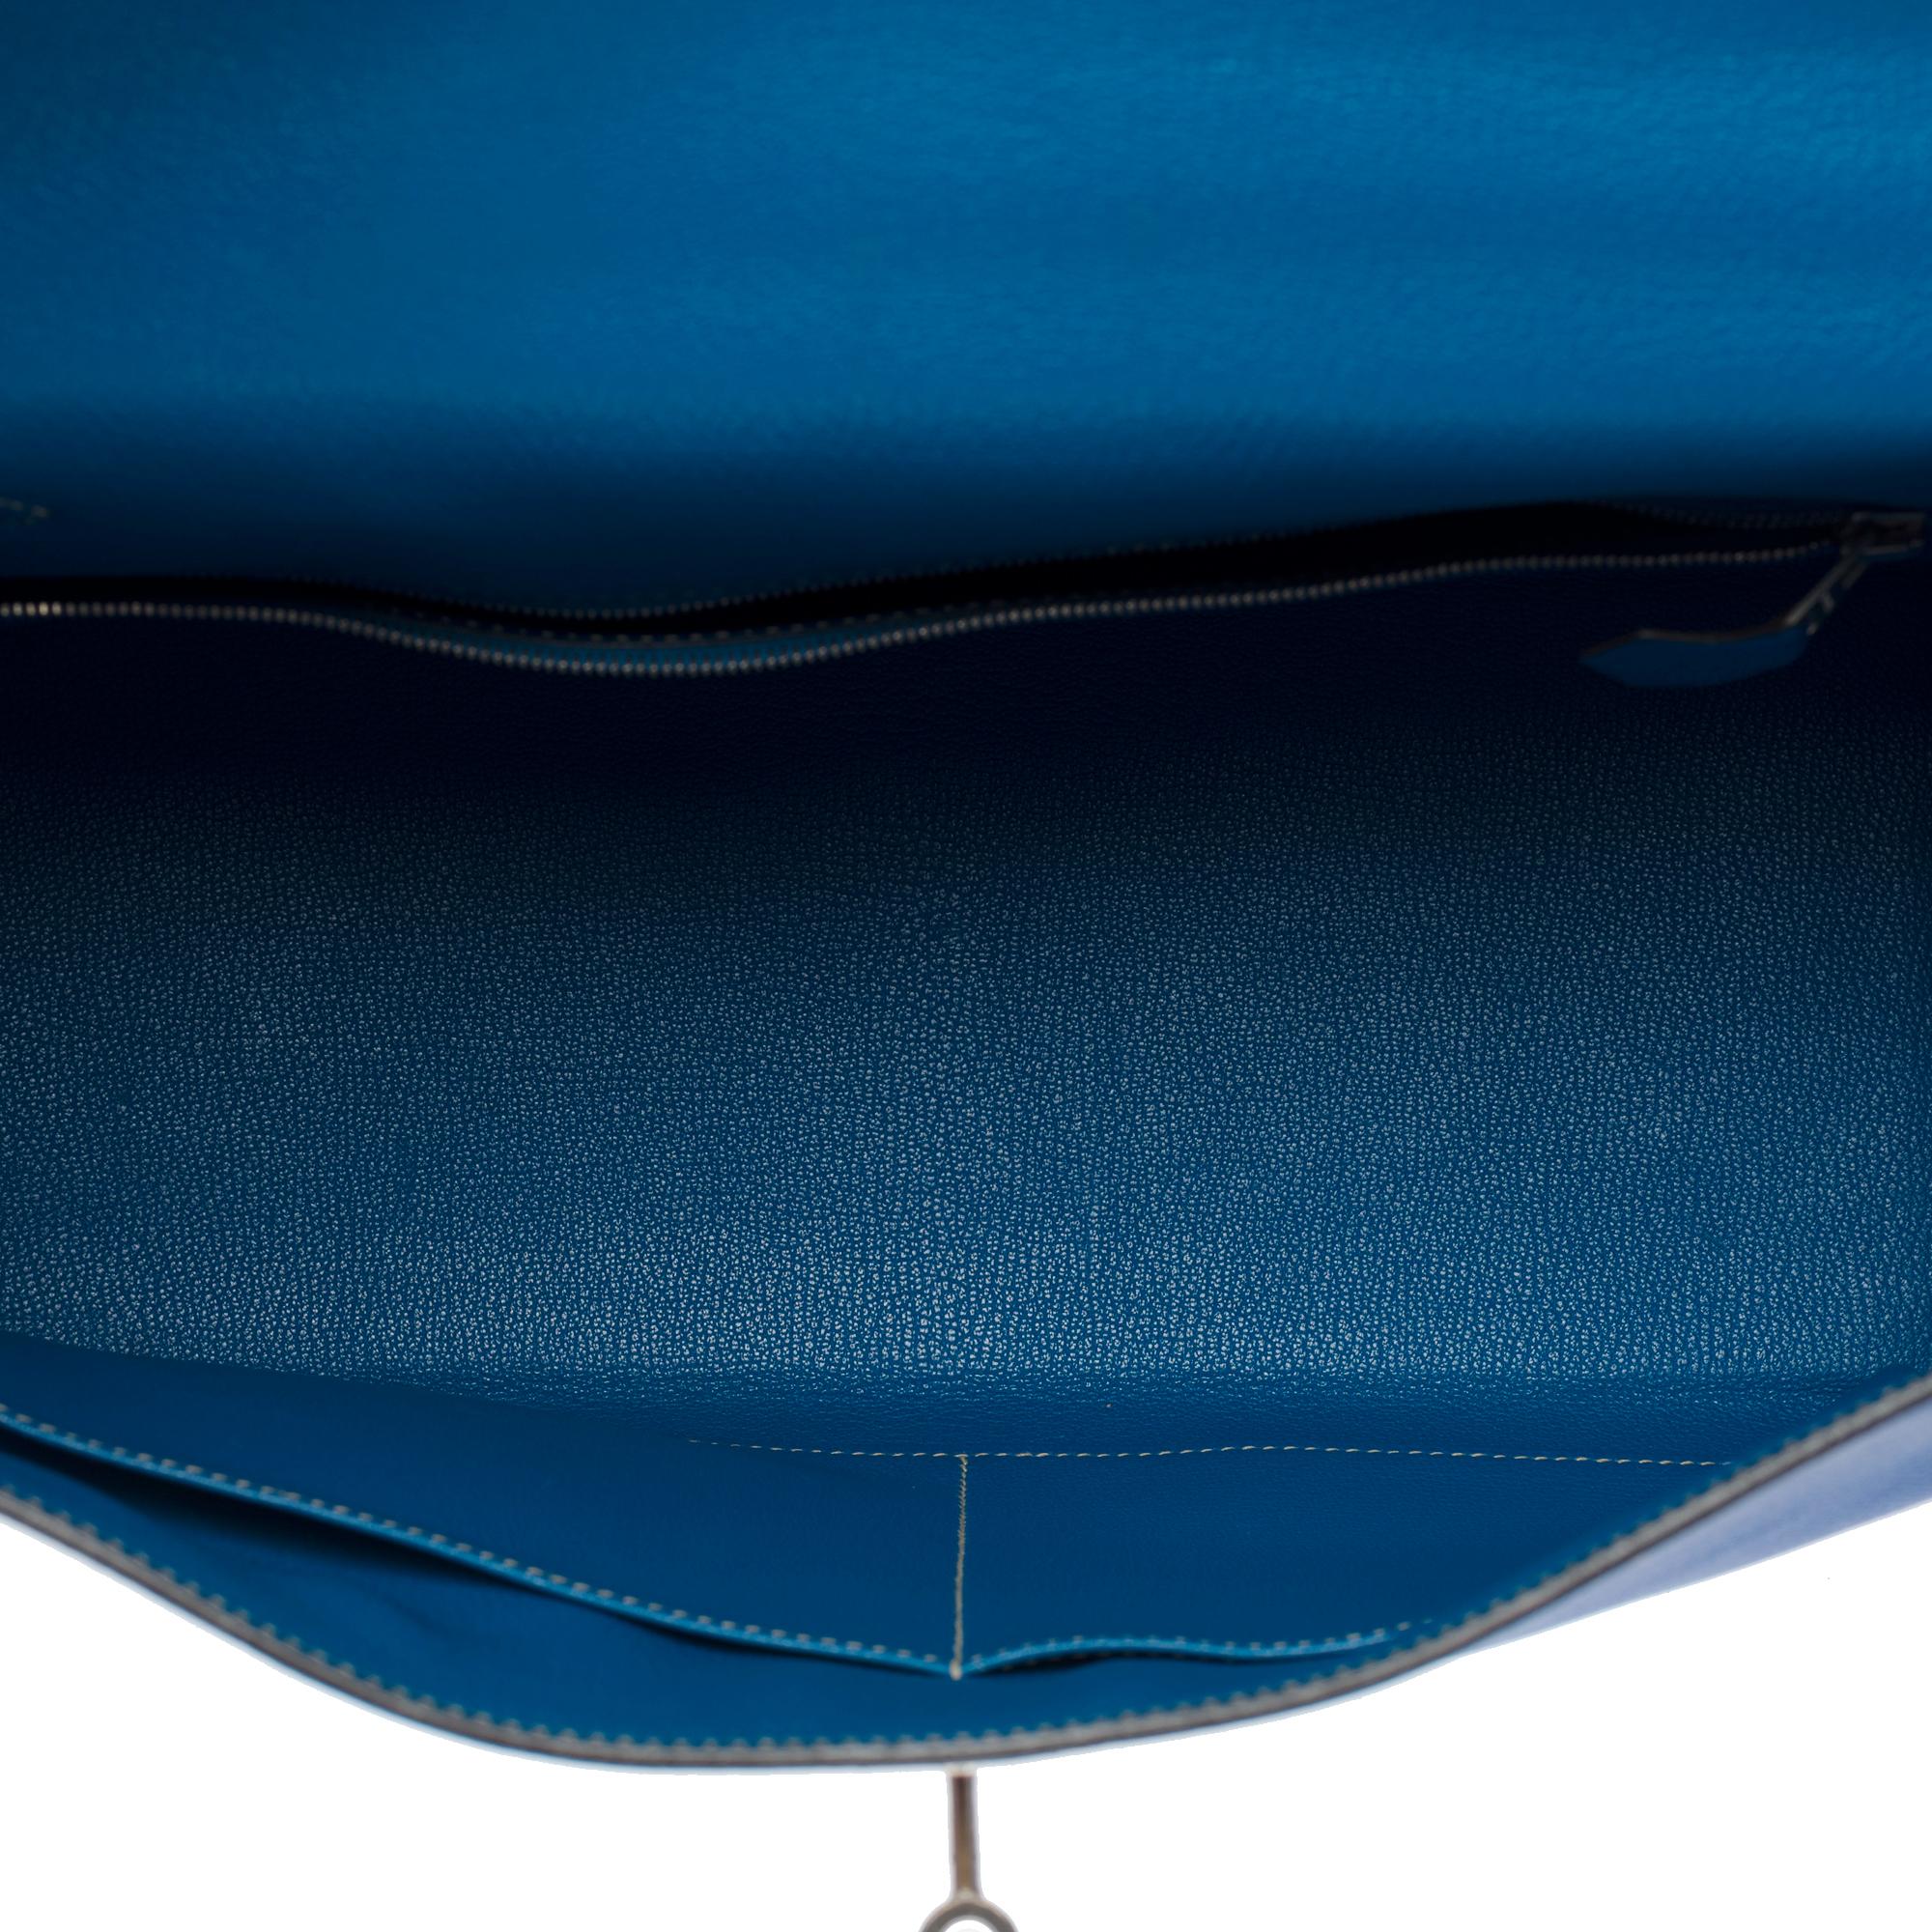 Candy Edition Hermès Kelly 35 retourne handbag strap in Blue Epsom leather, SHW 4